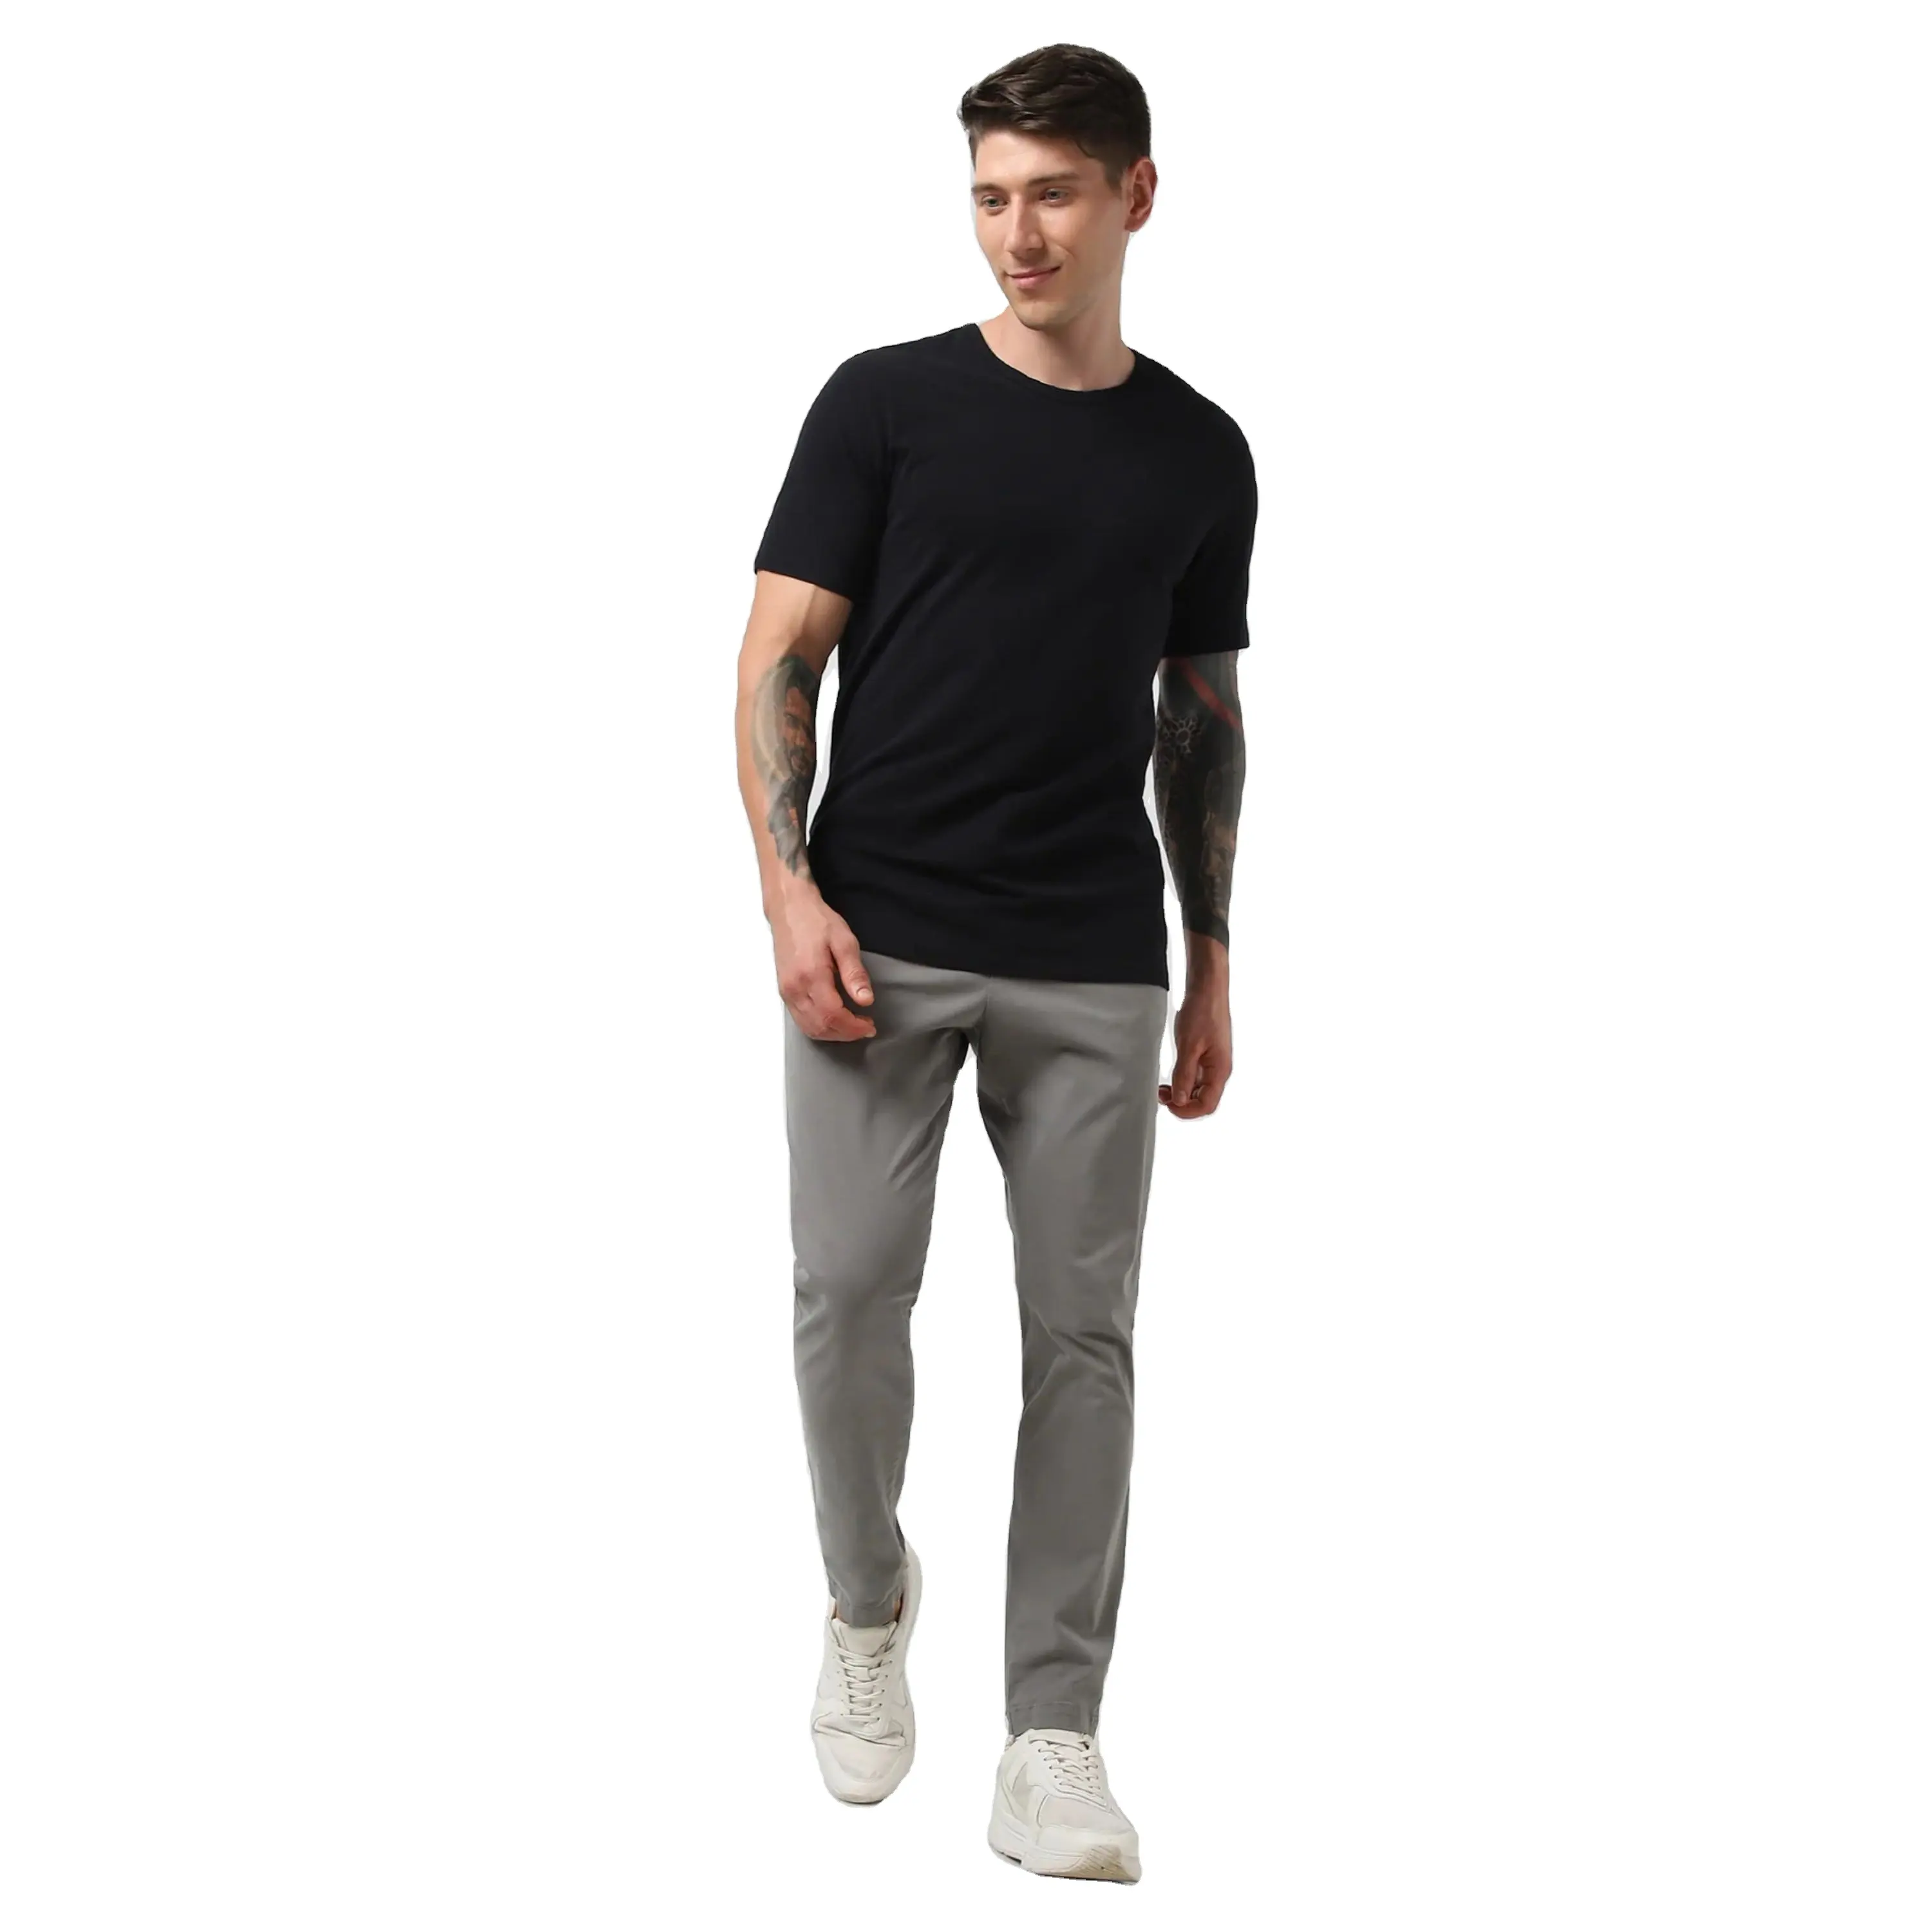 Camiseta ligera flameada para hombre: manga corta, acabado texturizado único, uso diario informal